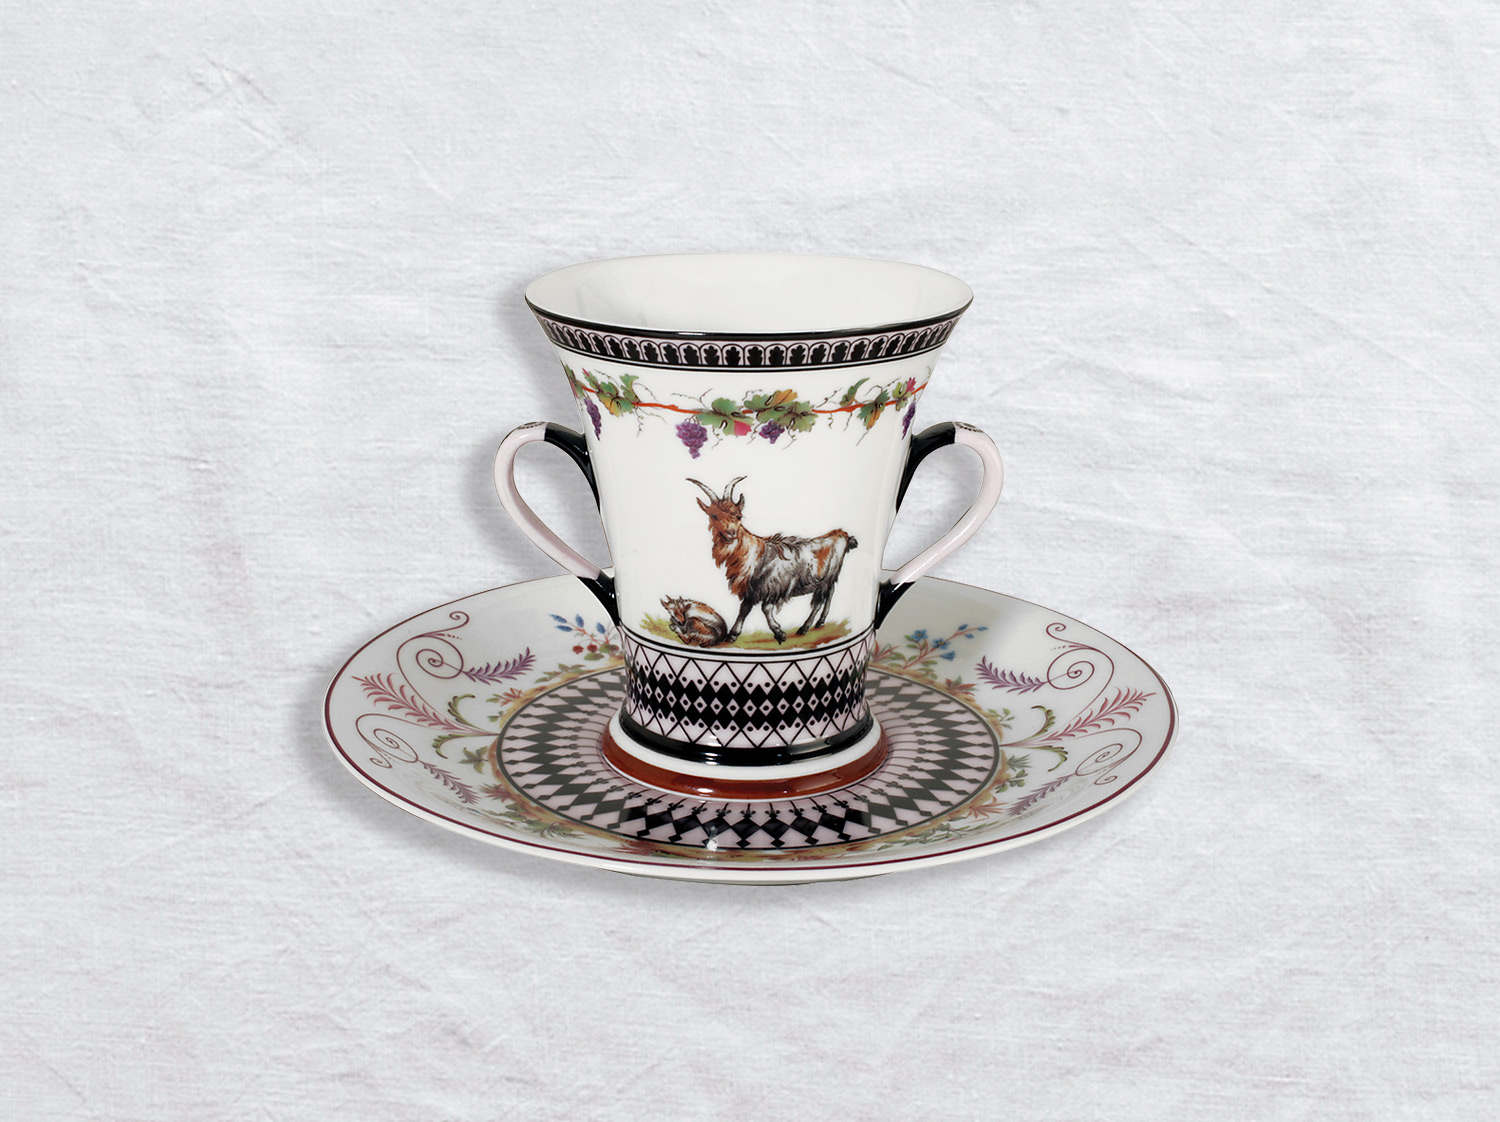 Gobelet cornet et soucoupe en porcelaine de la collection La laiterie de rambouillet Bernardaud